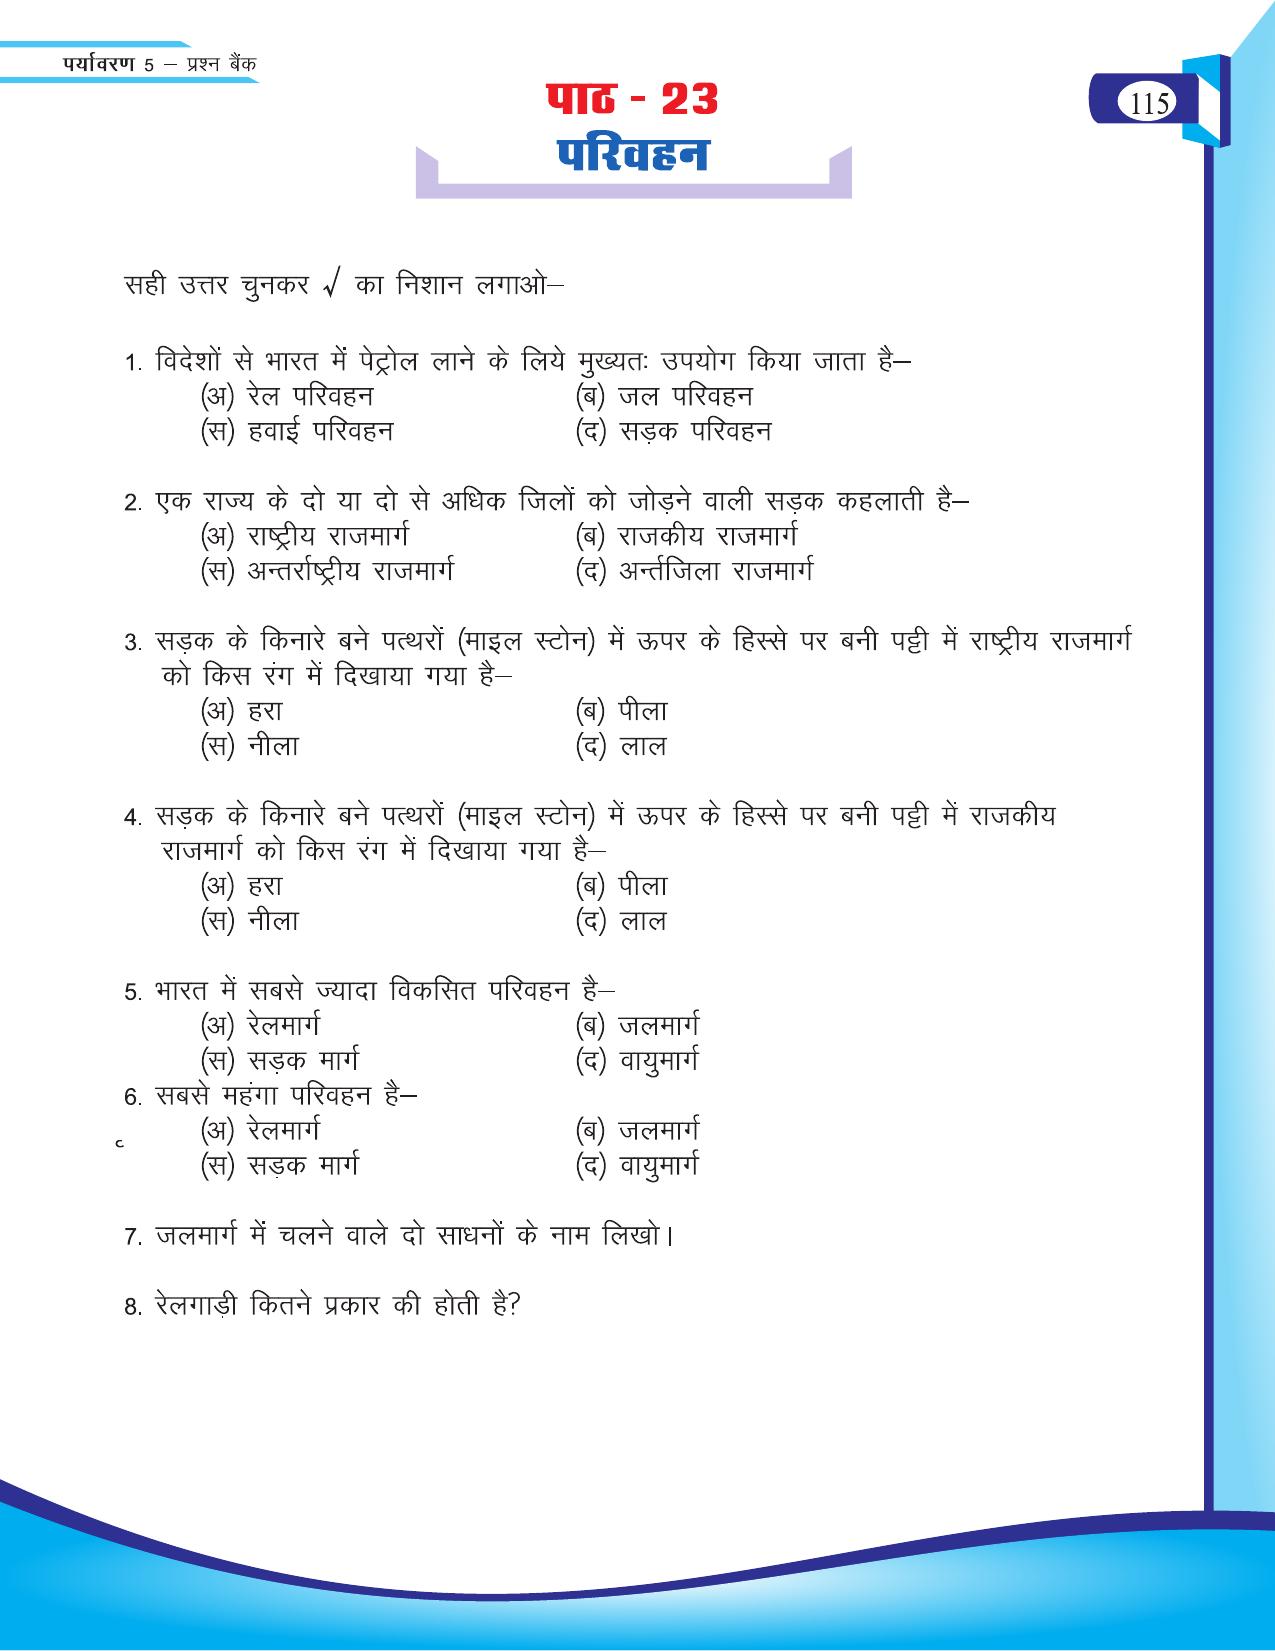 Chhattisgarh Board Class 5 EVS Question Bank 2015-16 - Page 41